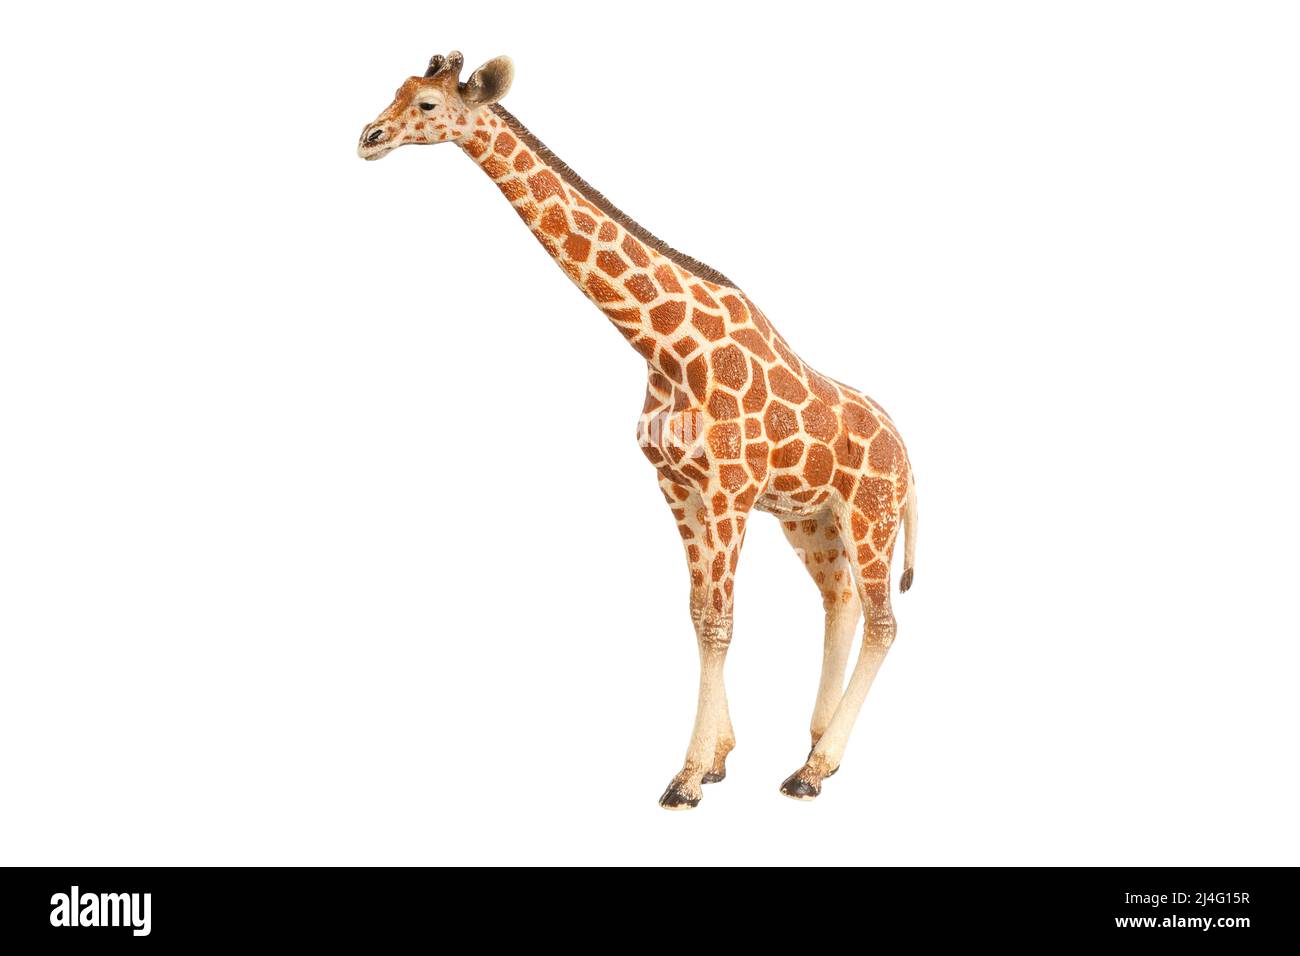 figurine jouet girafe isolée sur fond blanc. Photo de haute qualité Banque D'Images